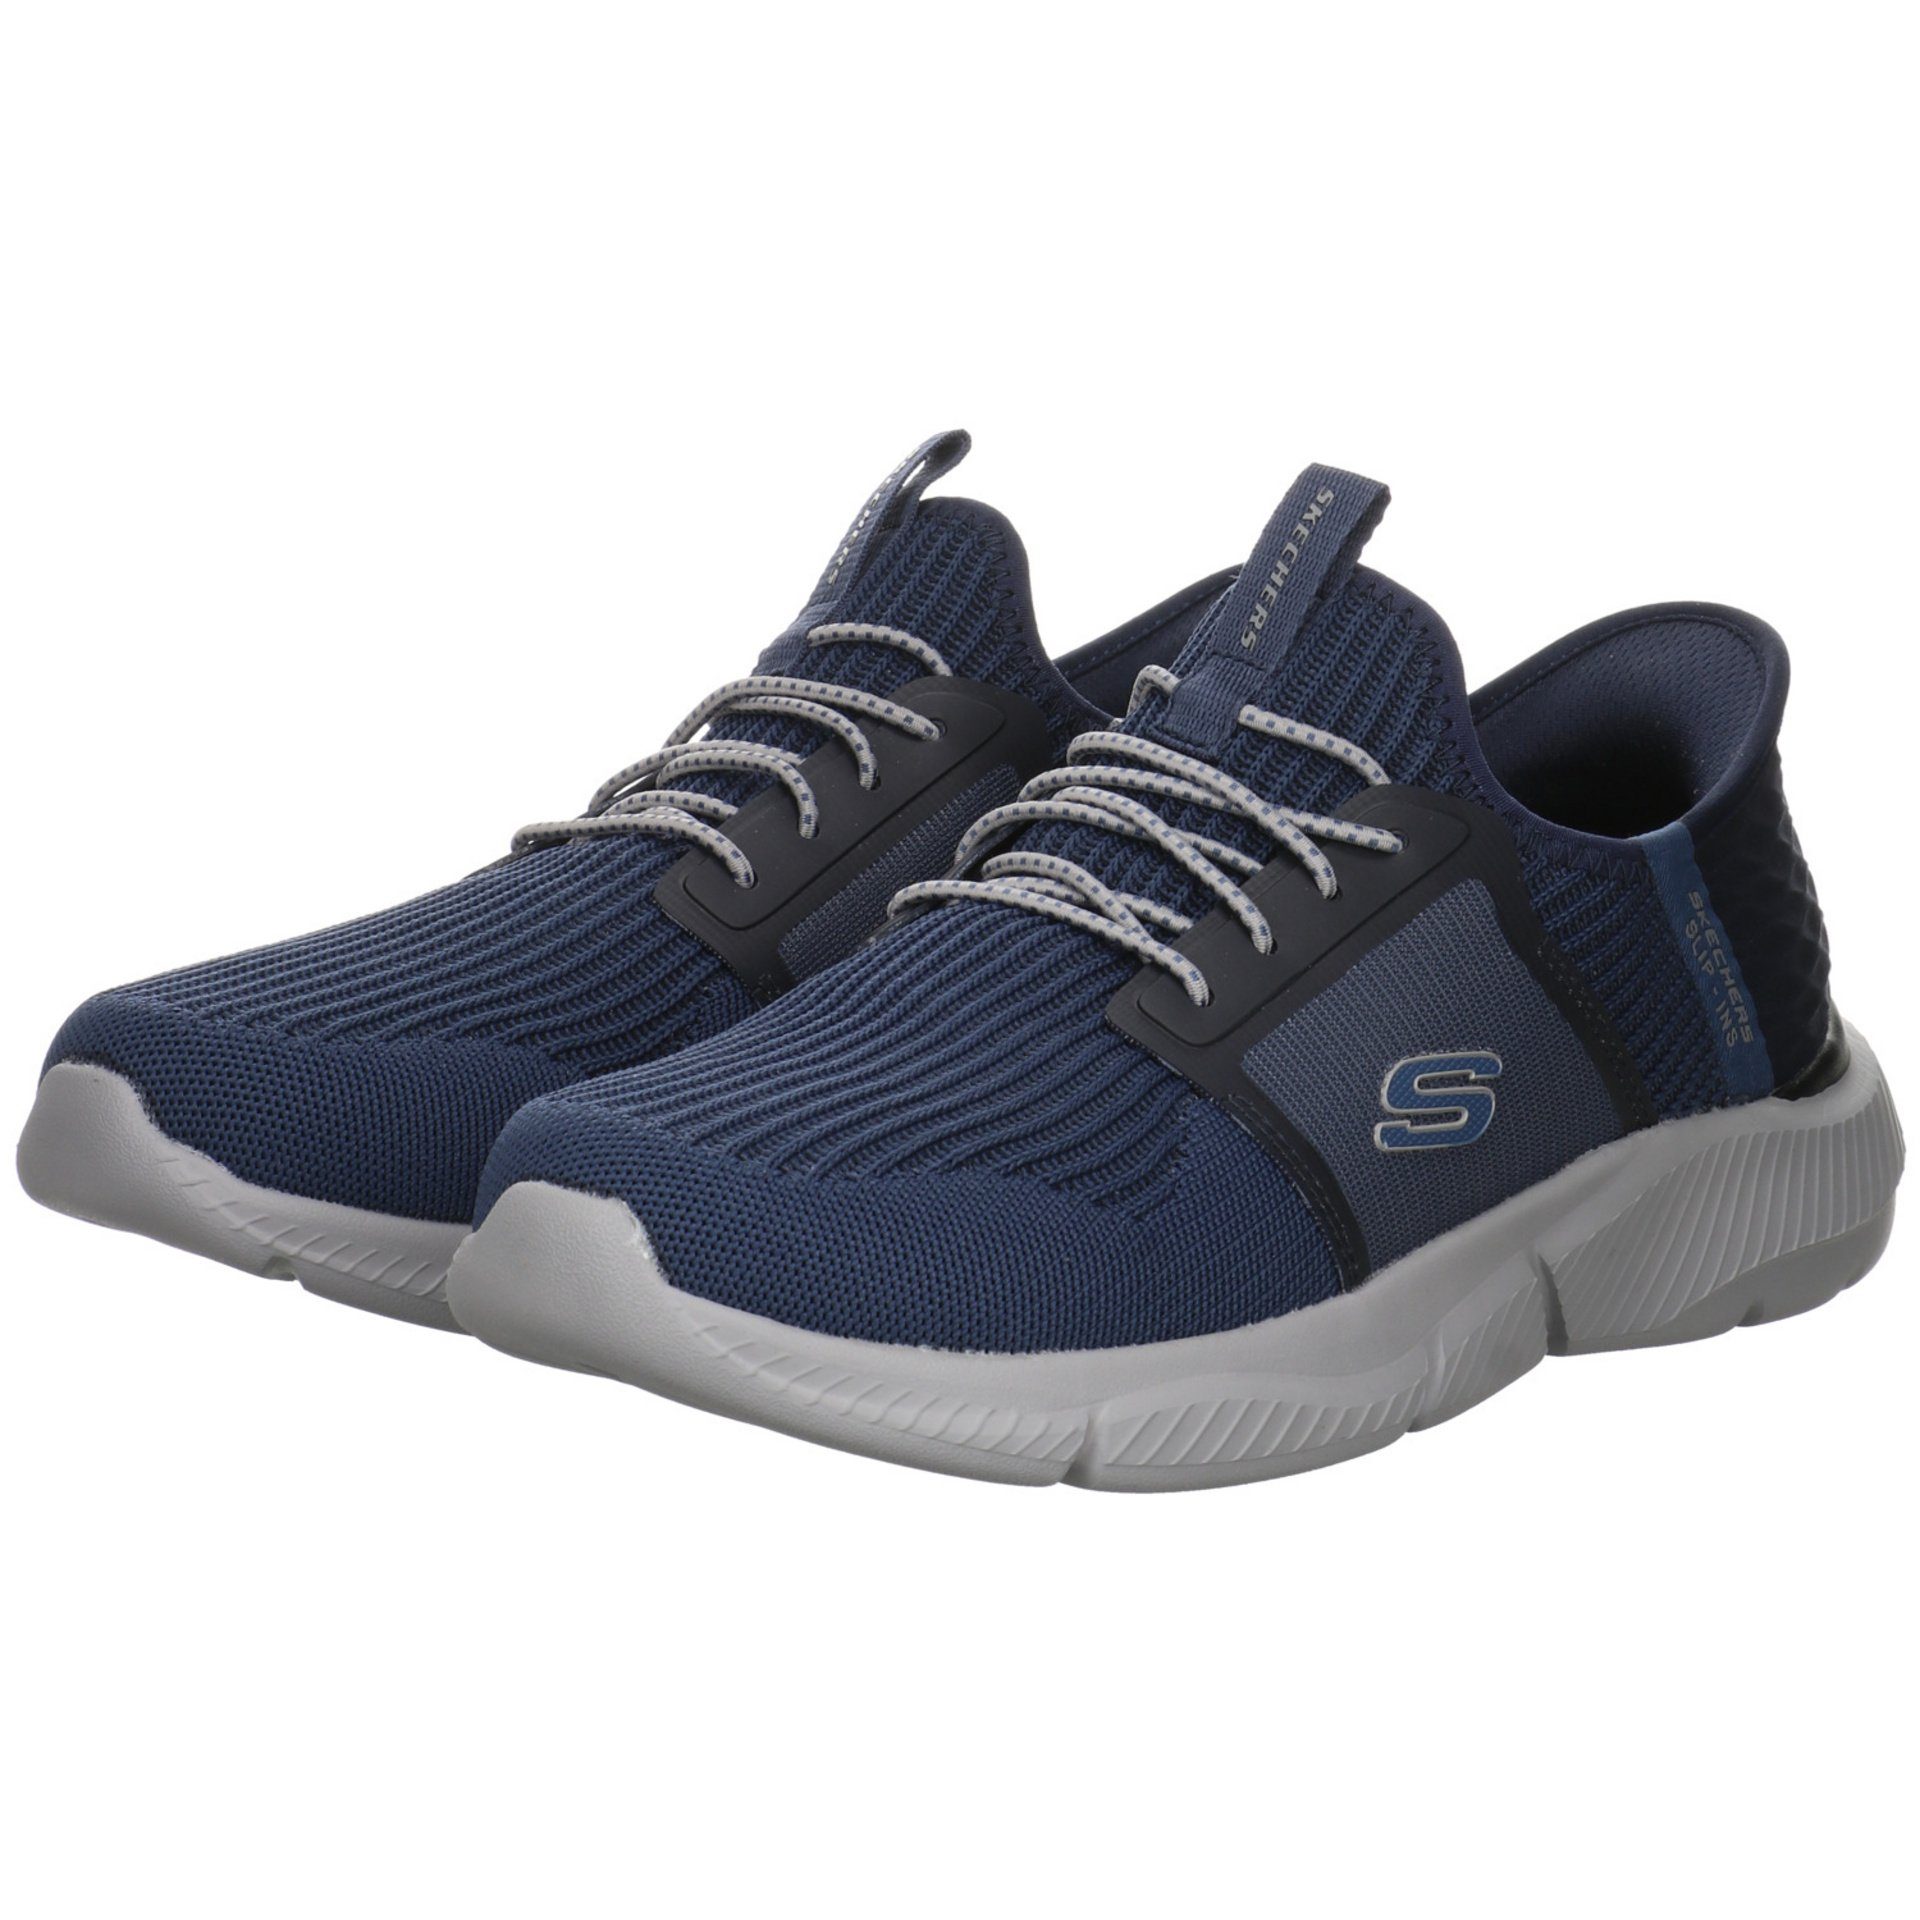 Herren Schuhe Slipper Synthetik Slip-On Sneaker Skechers dunkel blau